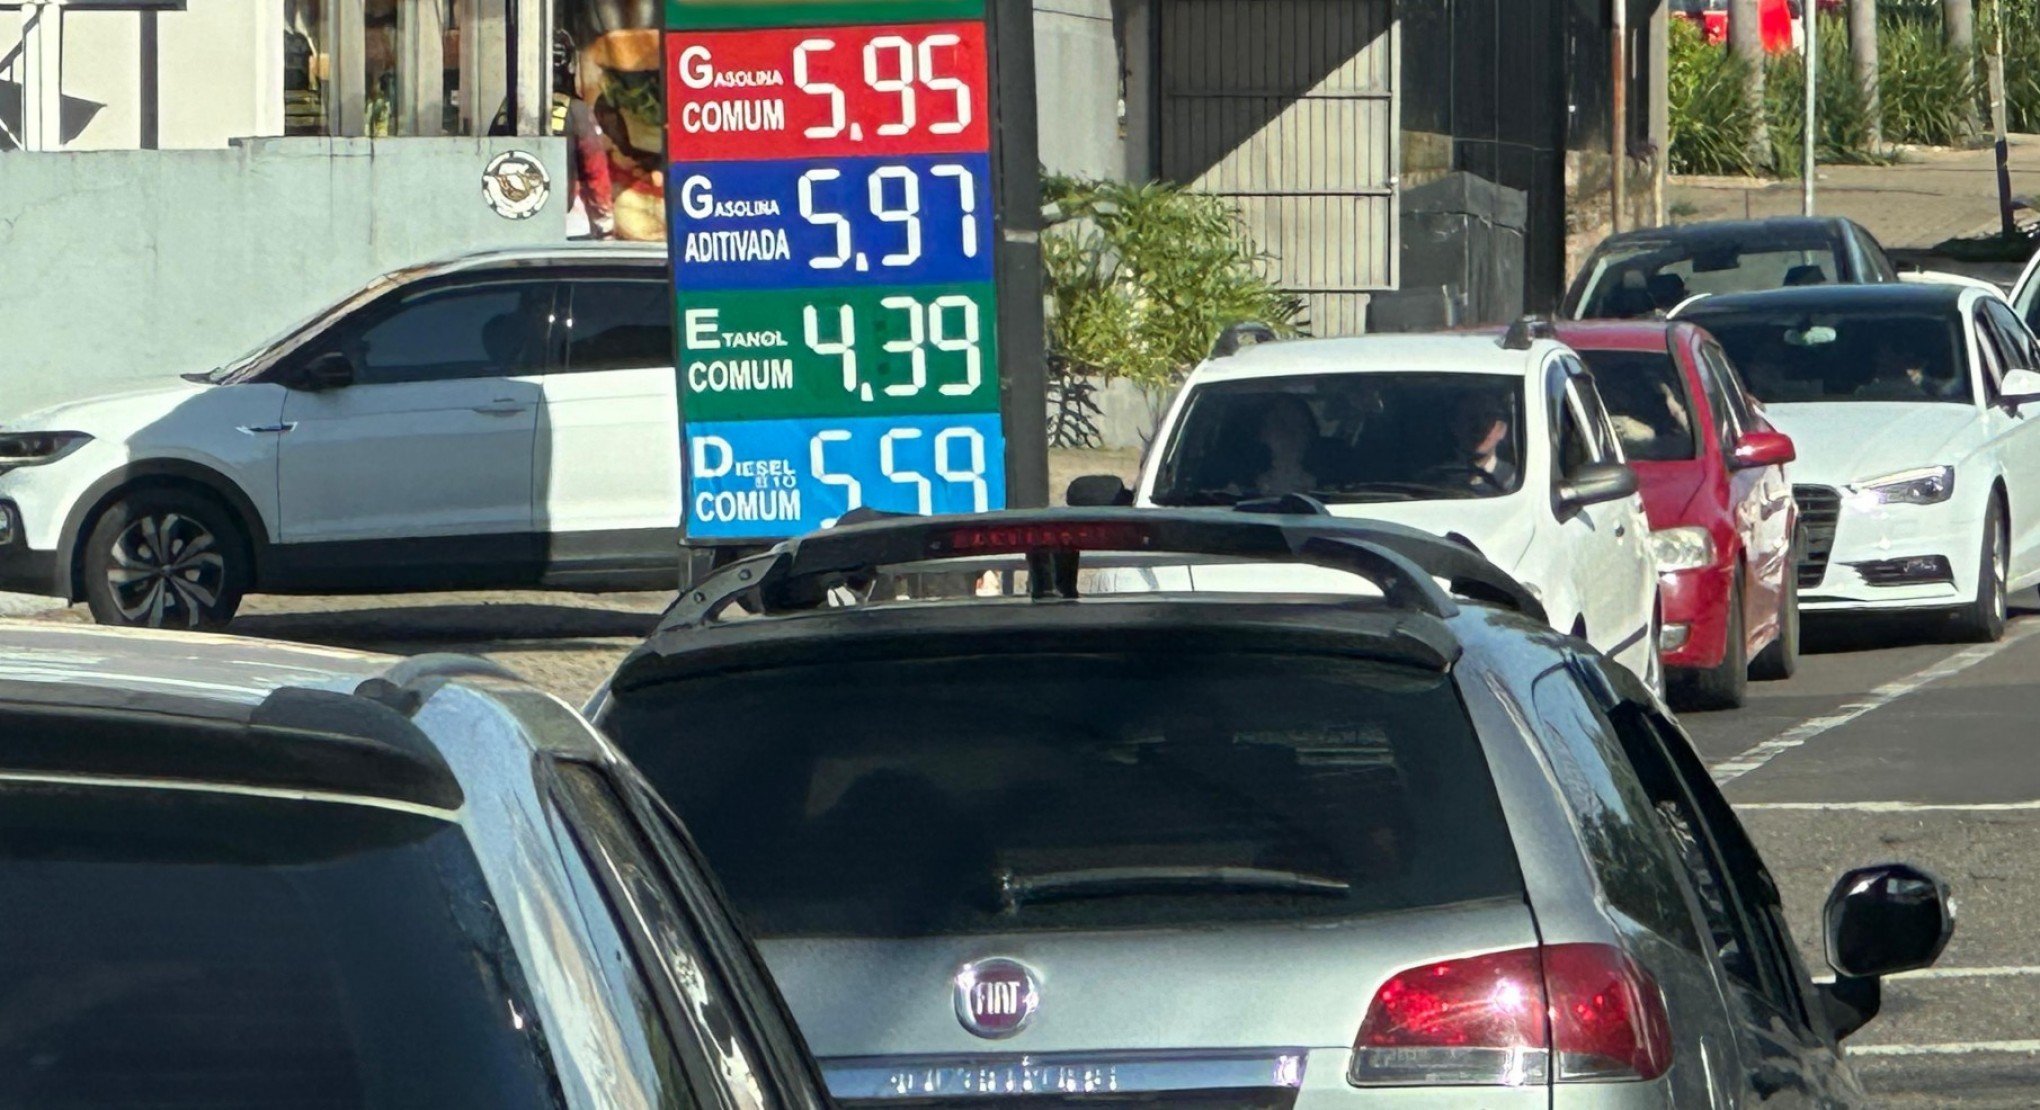 Gasolina é vendida até 10 centavos mais cara em Novo Hamburgo; veja o motivo